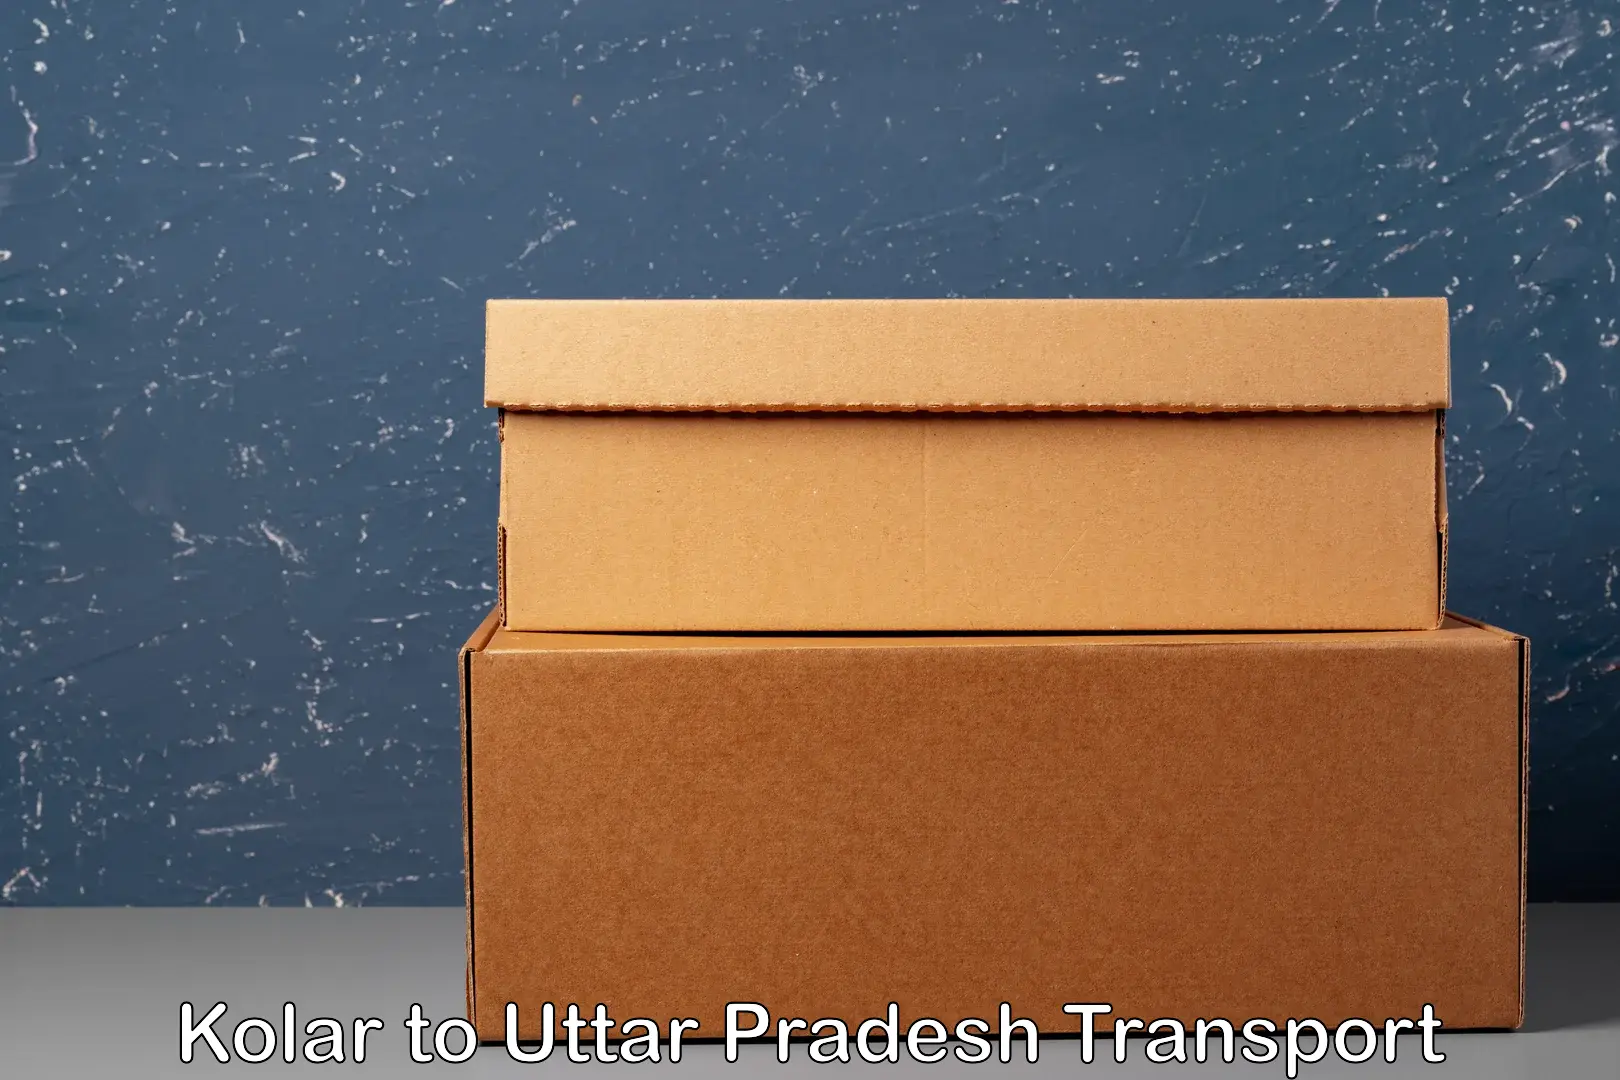 International cargo transportation services Kolar to Manjhanpur